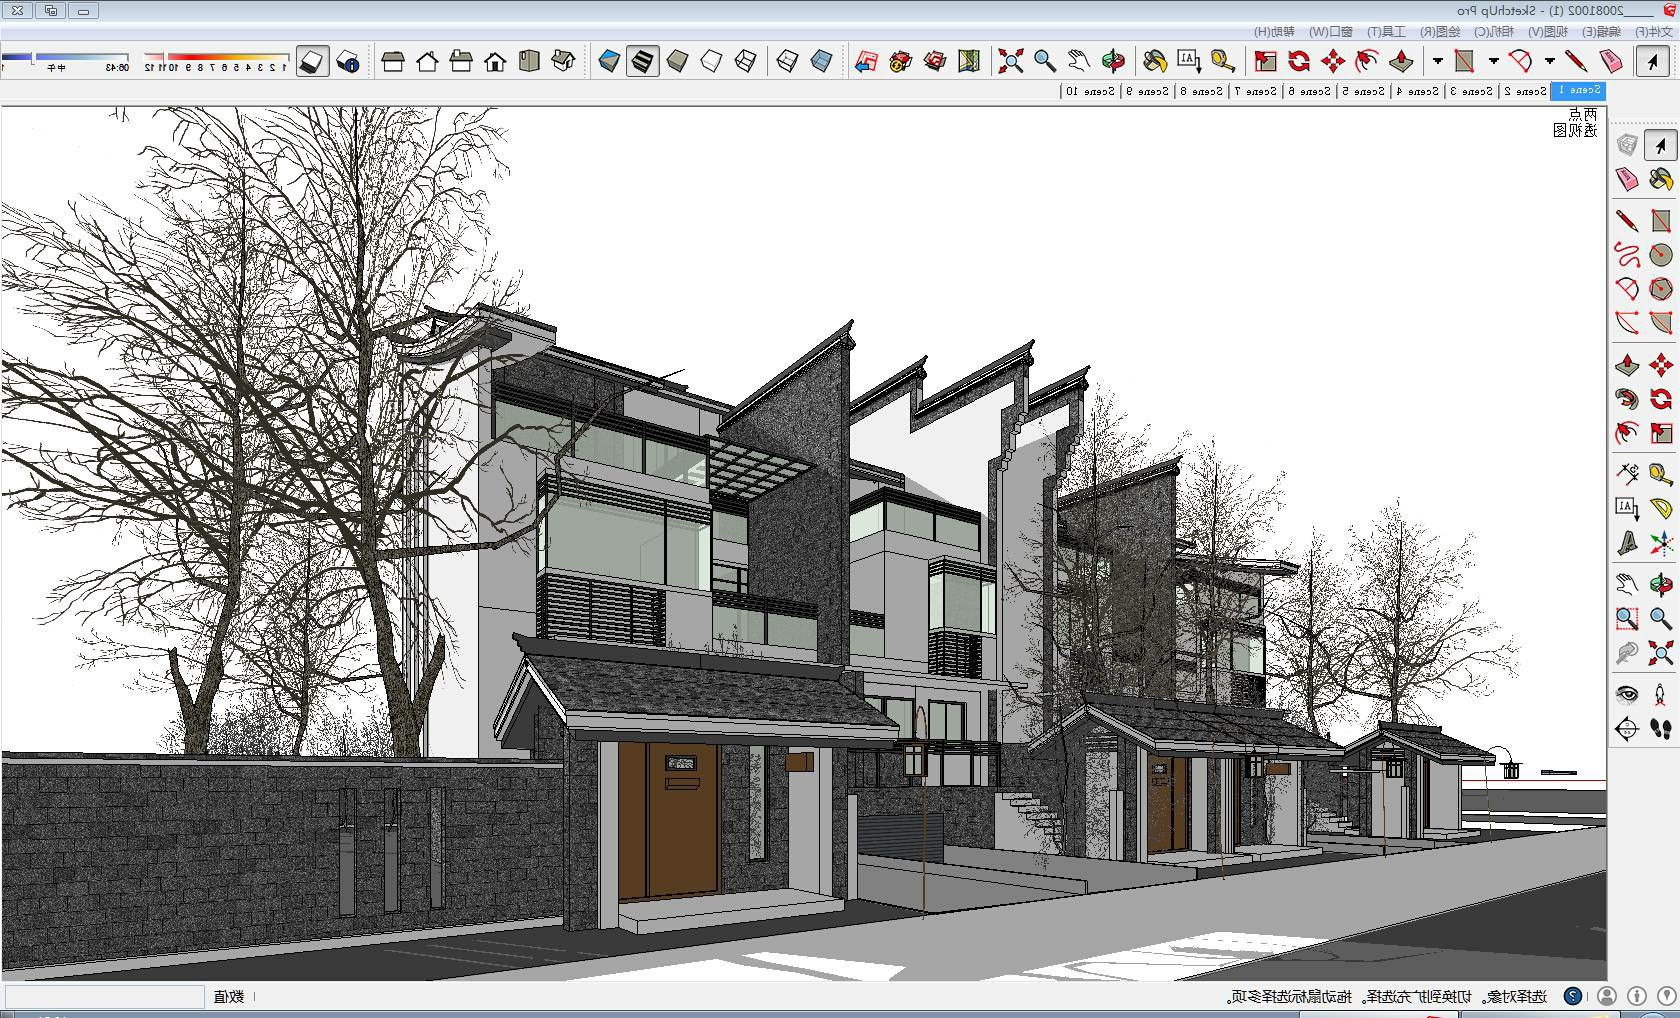 新中式风格联排别墅sketchup模型-编号363111 SketchUp建筑模型下载 第1张